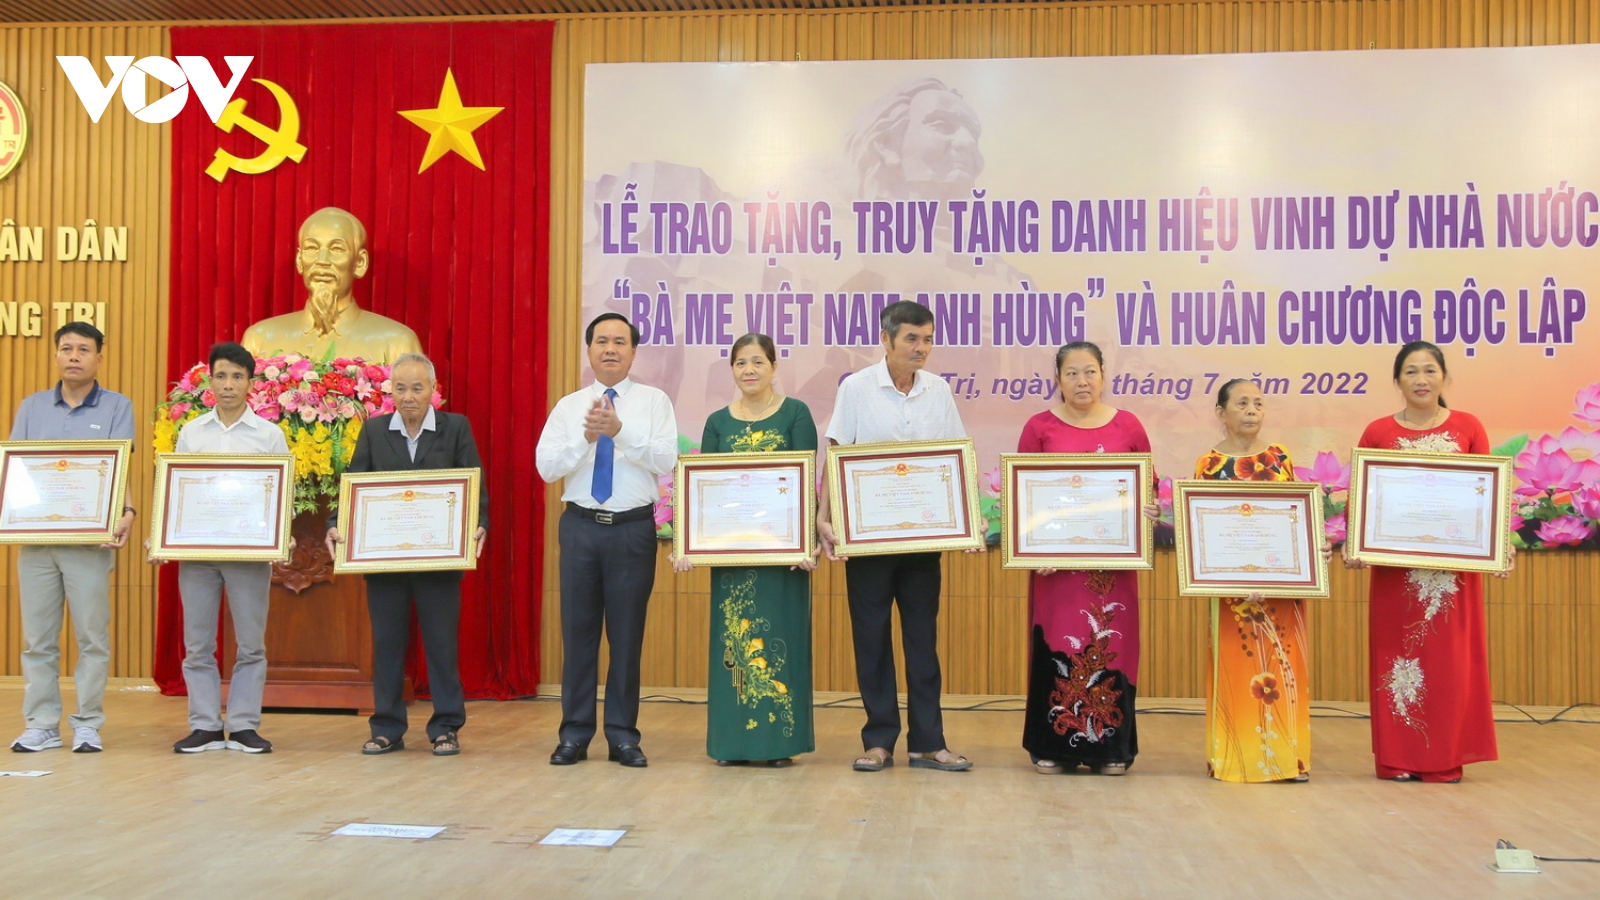 26 bà mẹ được phong tặng và truy tặng danh hiệu Bà Mẹ Việt Nam Anh hùng